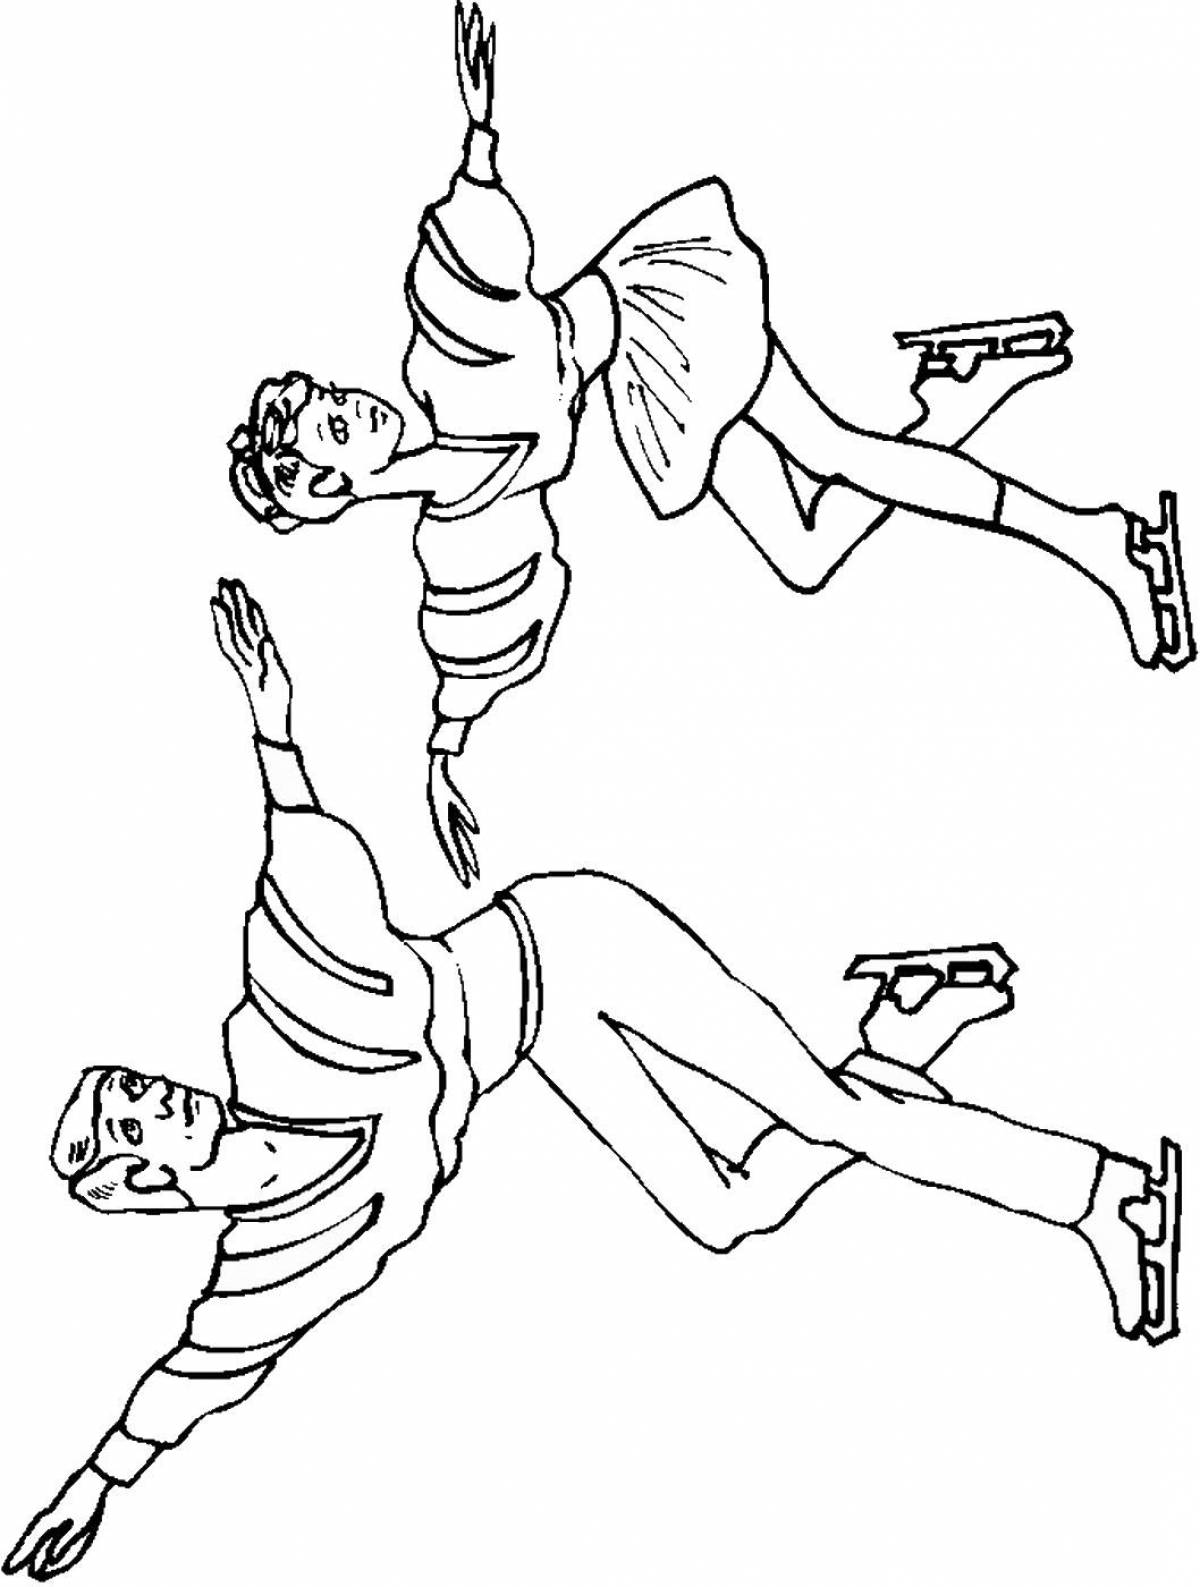 Рисунки на тему спорт фигурное катание